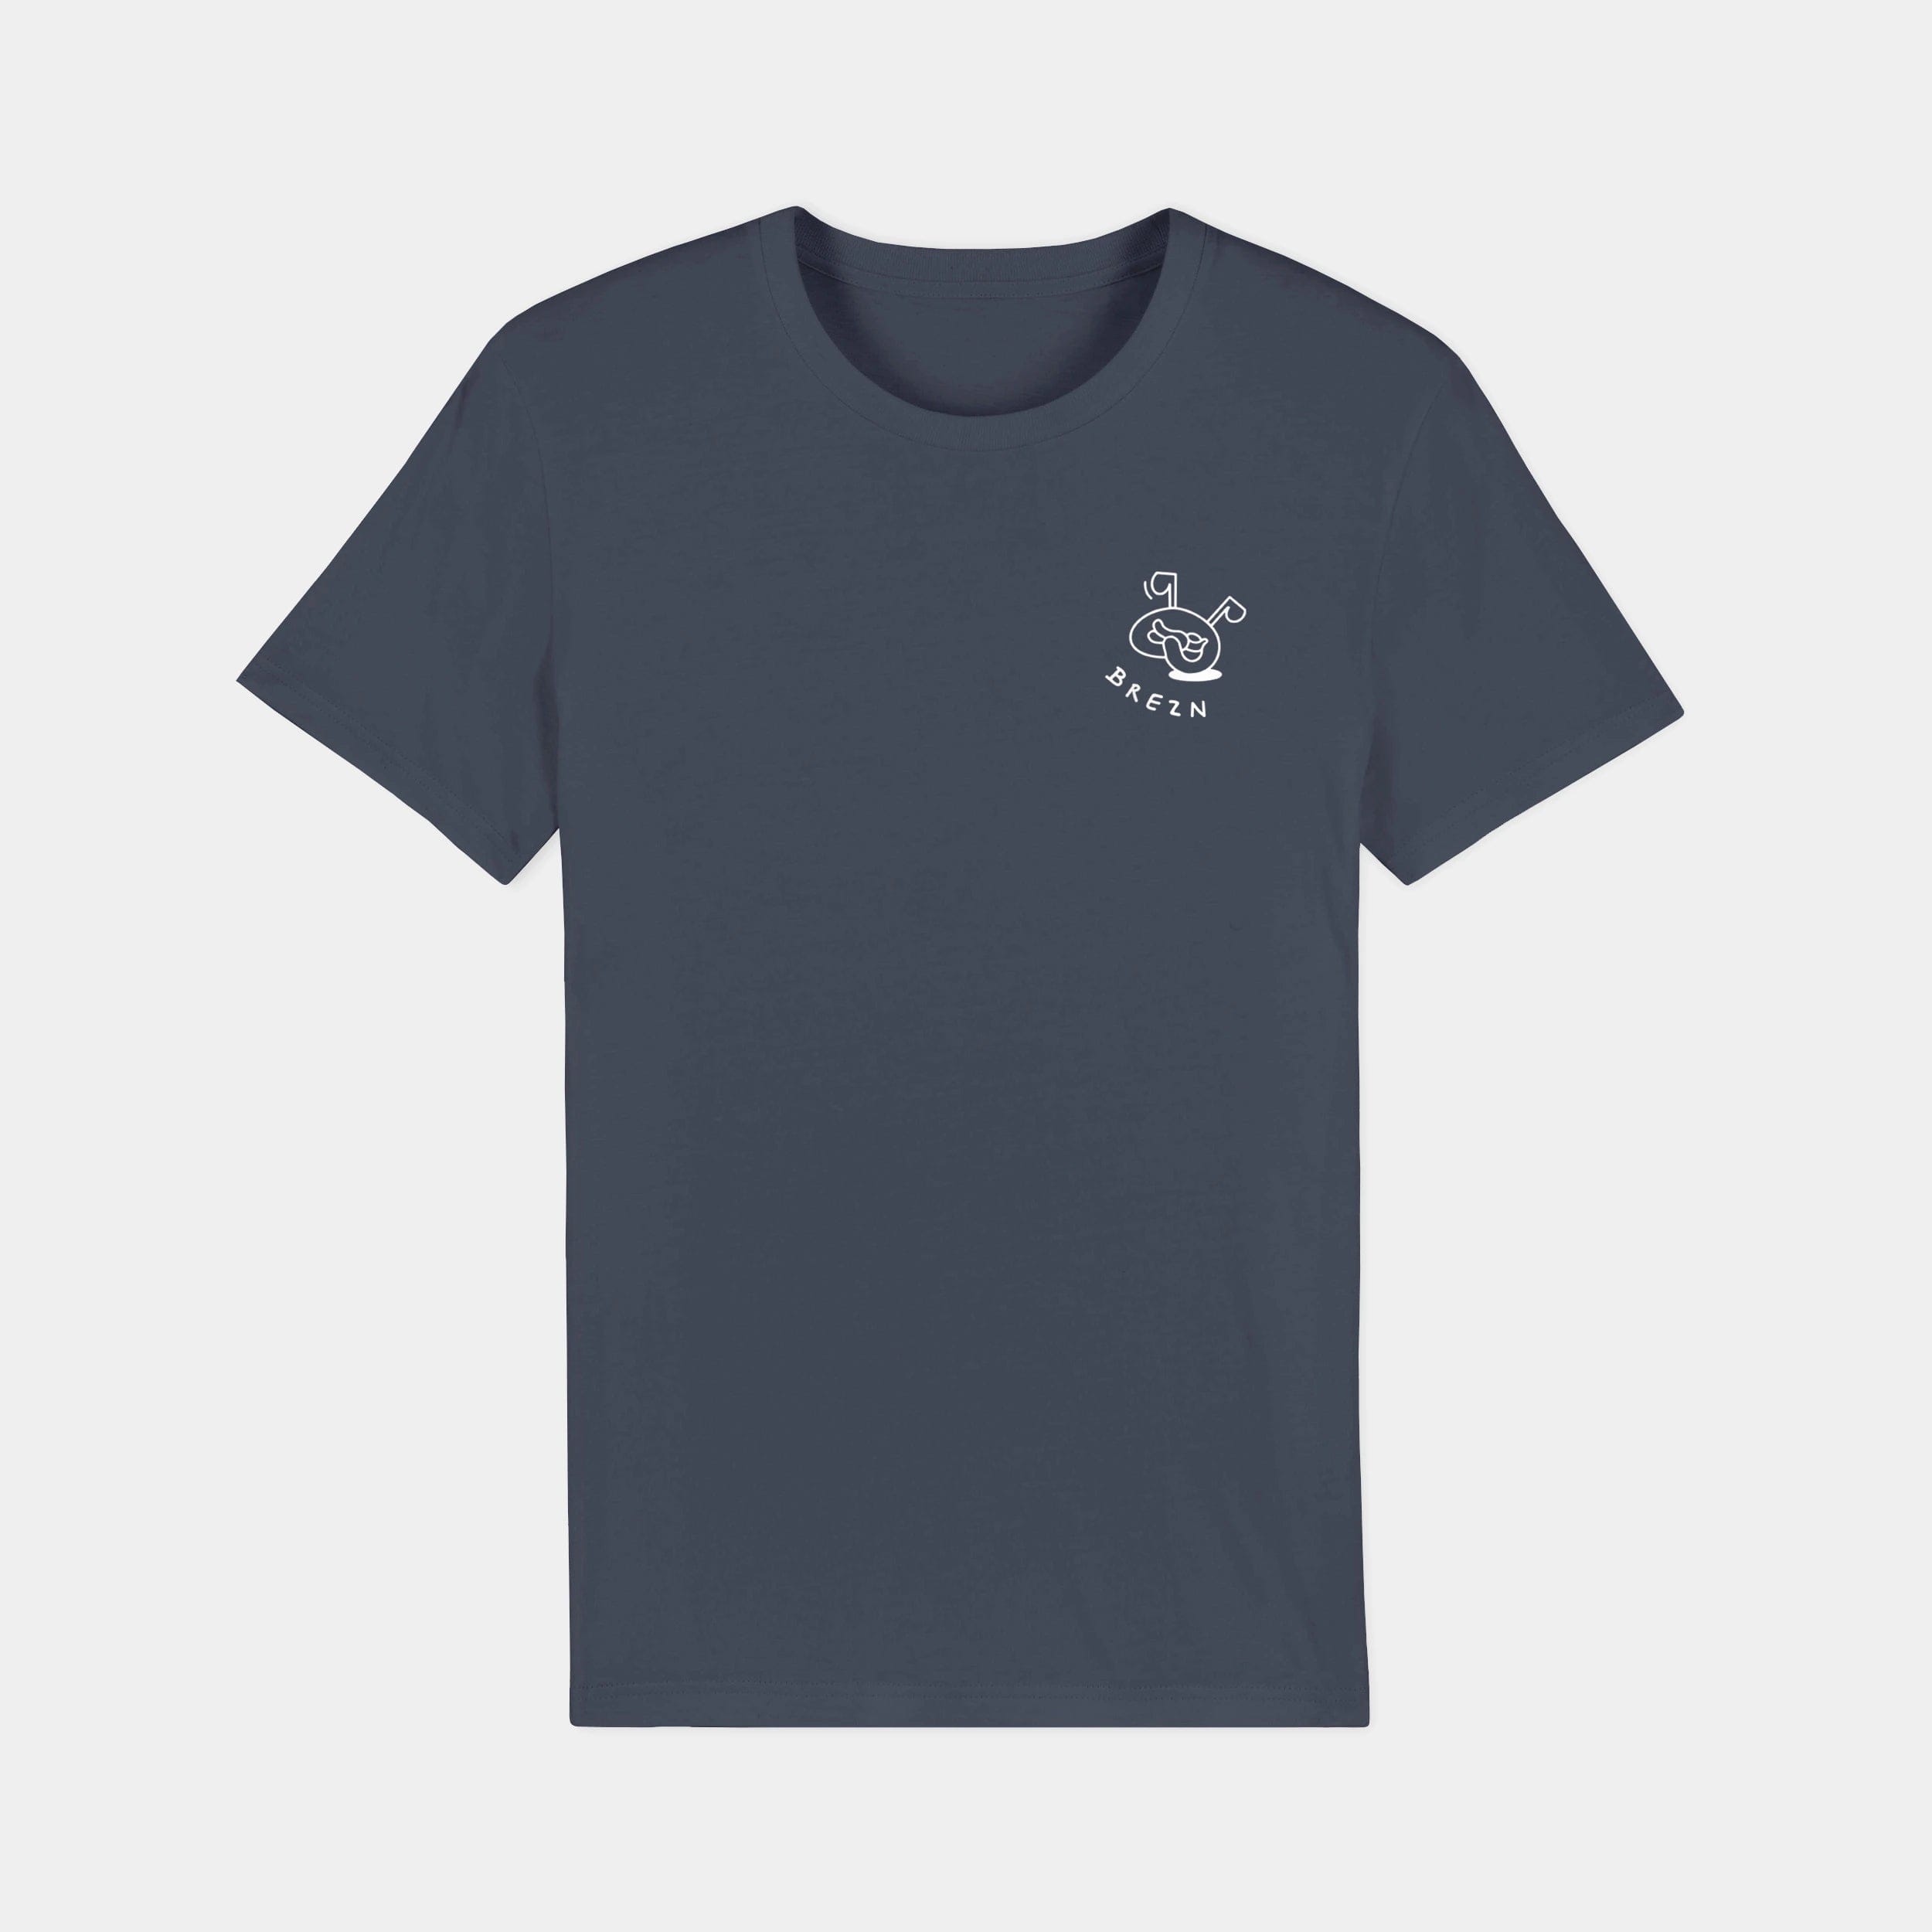 HEITER & LÄSSIG T-Shirt ORIGINAL "Brezn" - aus nachhaltiger und fairer Produktion